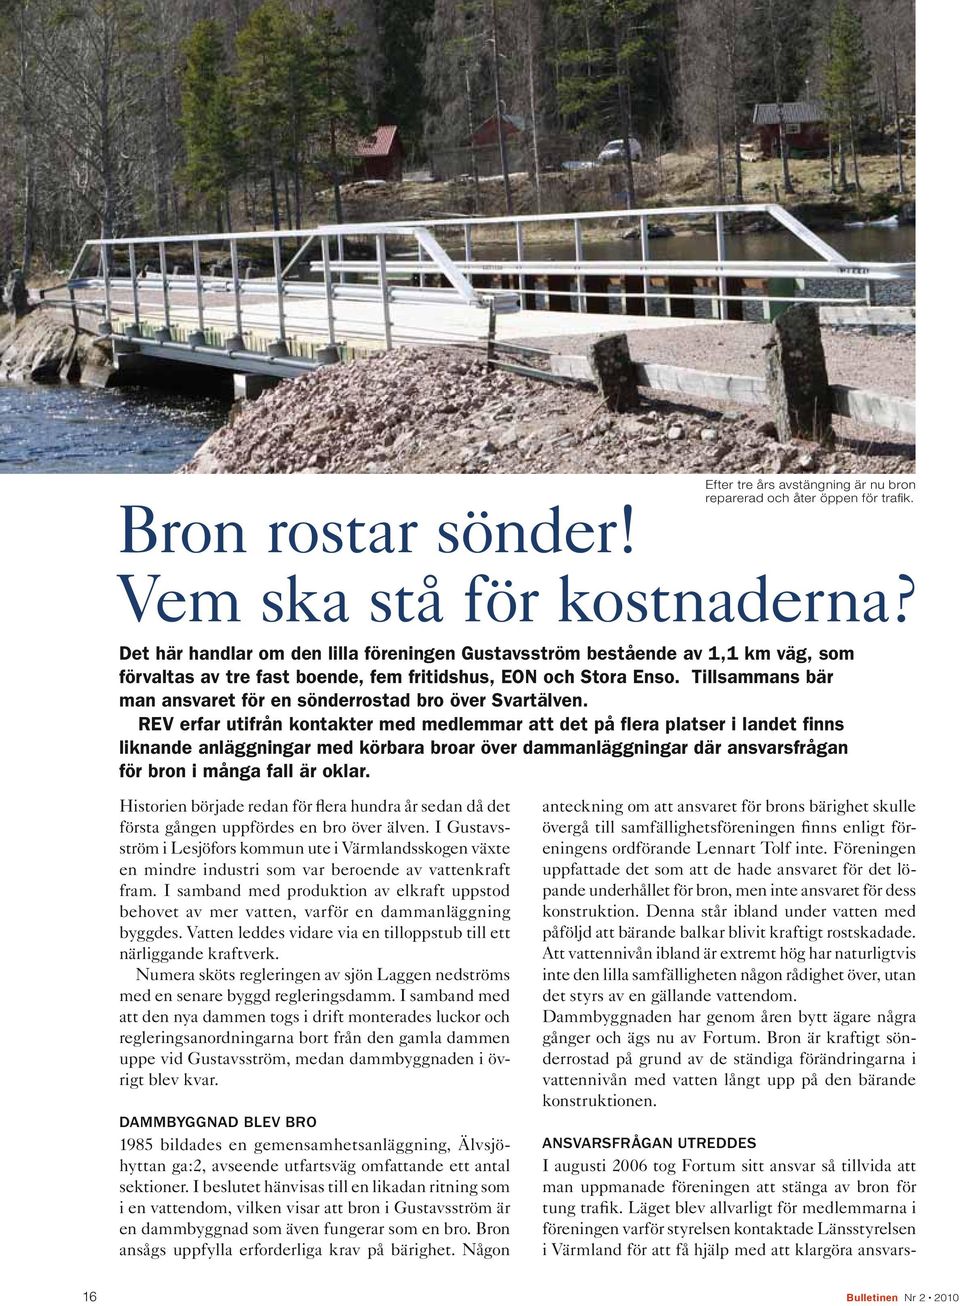 Tillsammans bär man ansvaret för en sönderrostad bro över Svartälven.